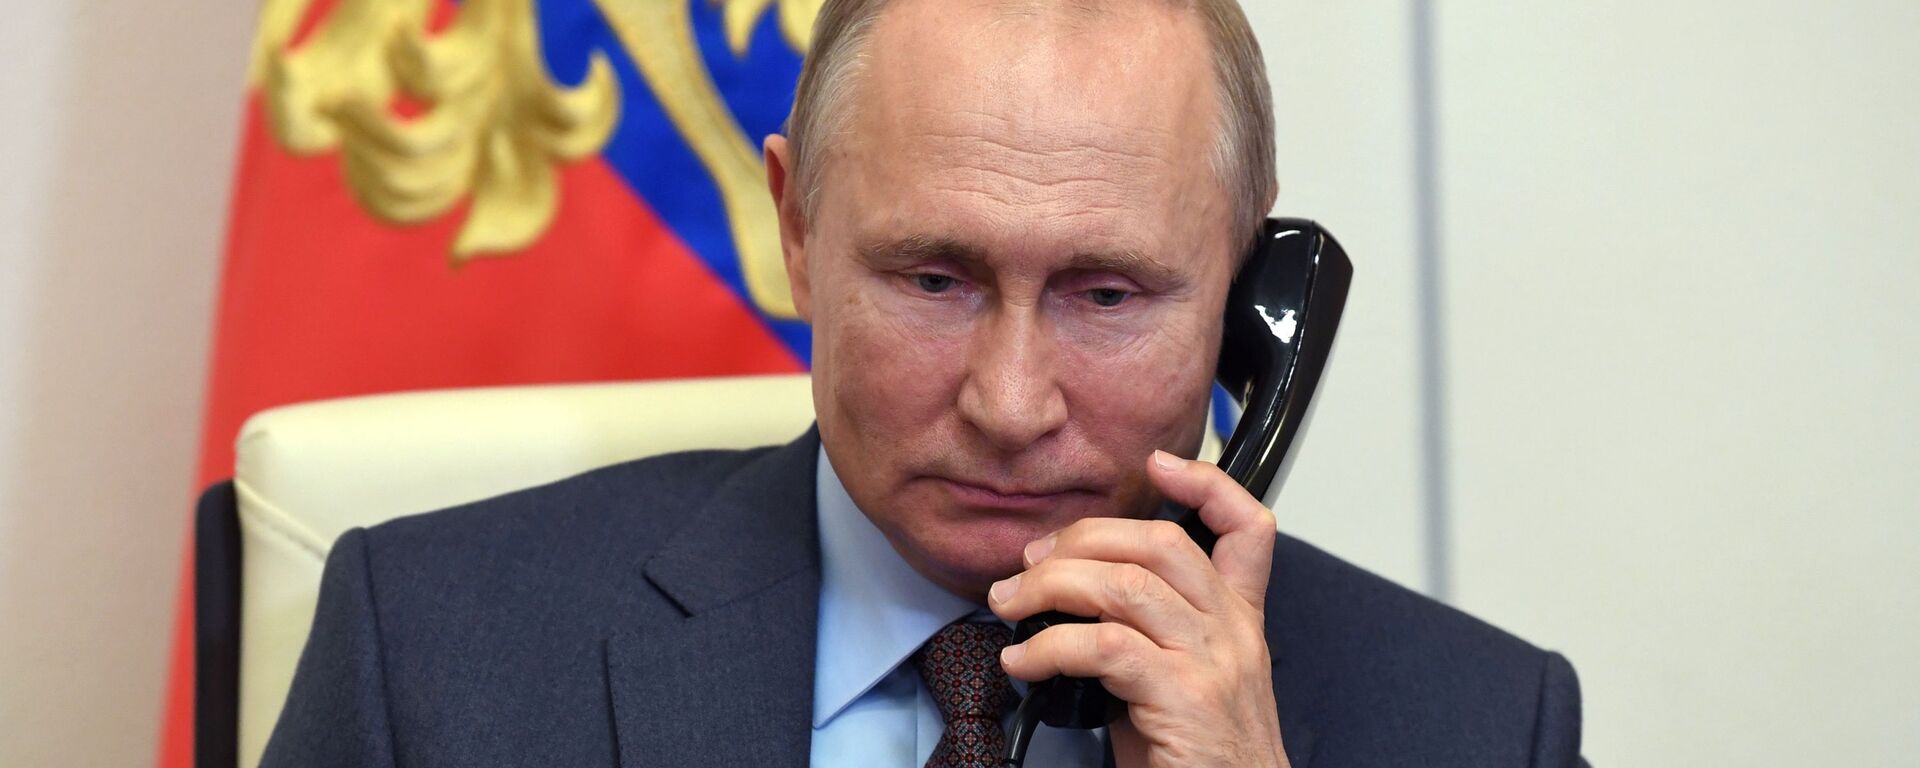 Rusijos prezidentas Vladimiras Putinas kalba telefonu - Sputnik Lietuva, 1920, 12.10.2021